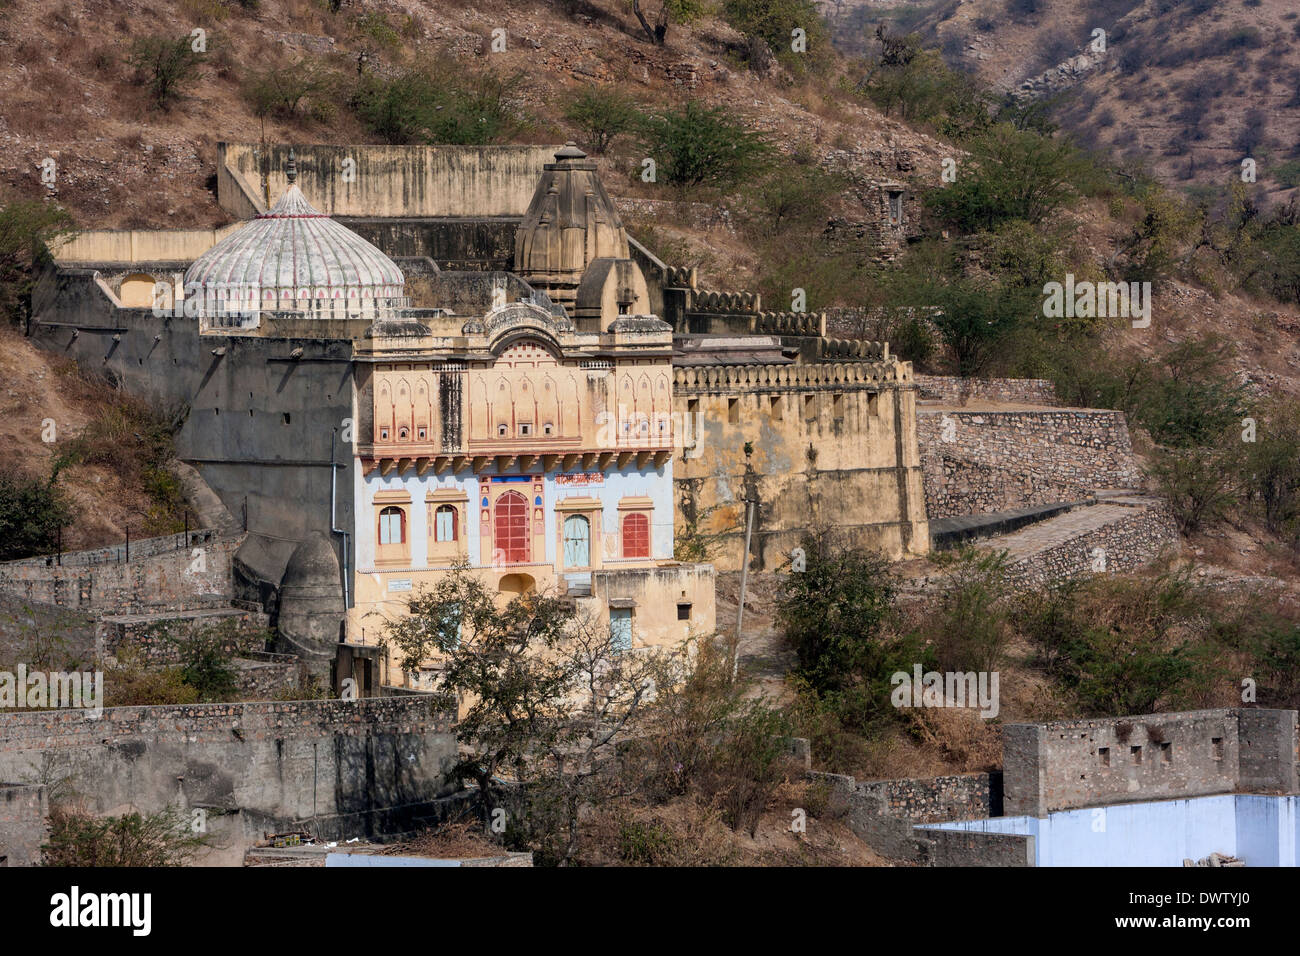 Amer (ou orange), Village près de Jaipur, Rajasthan, Inde. Un Temple Hindou dédié à Krishna, milieu du 17e. Siècle. Banque D'Images